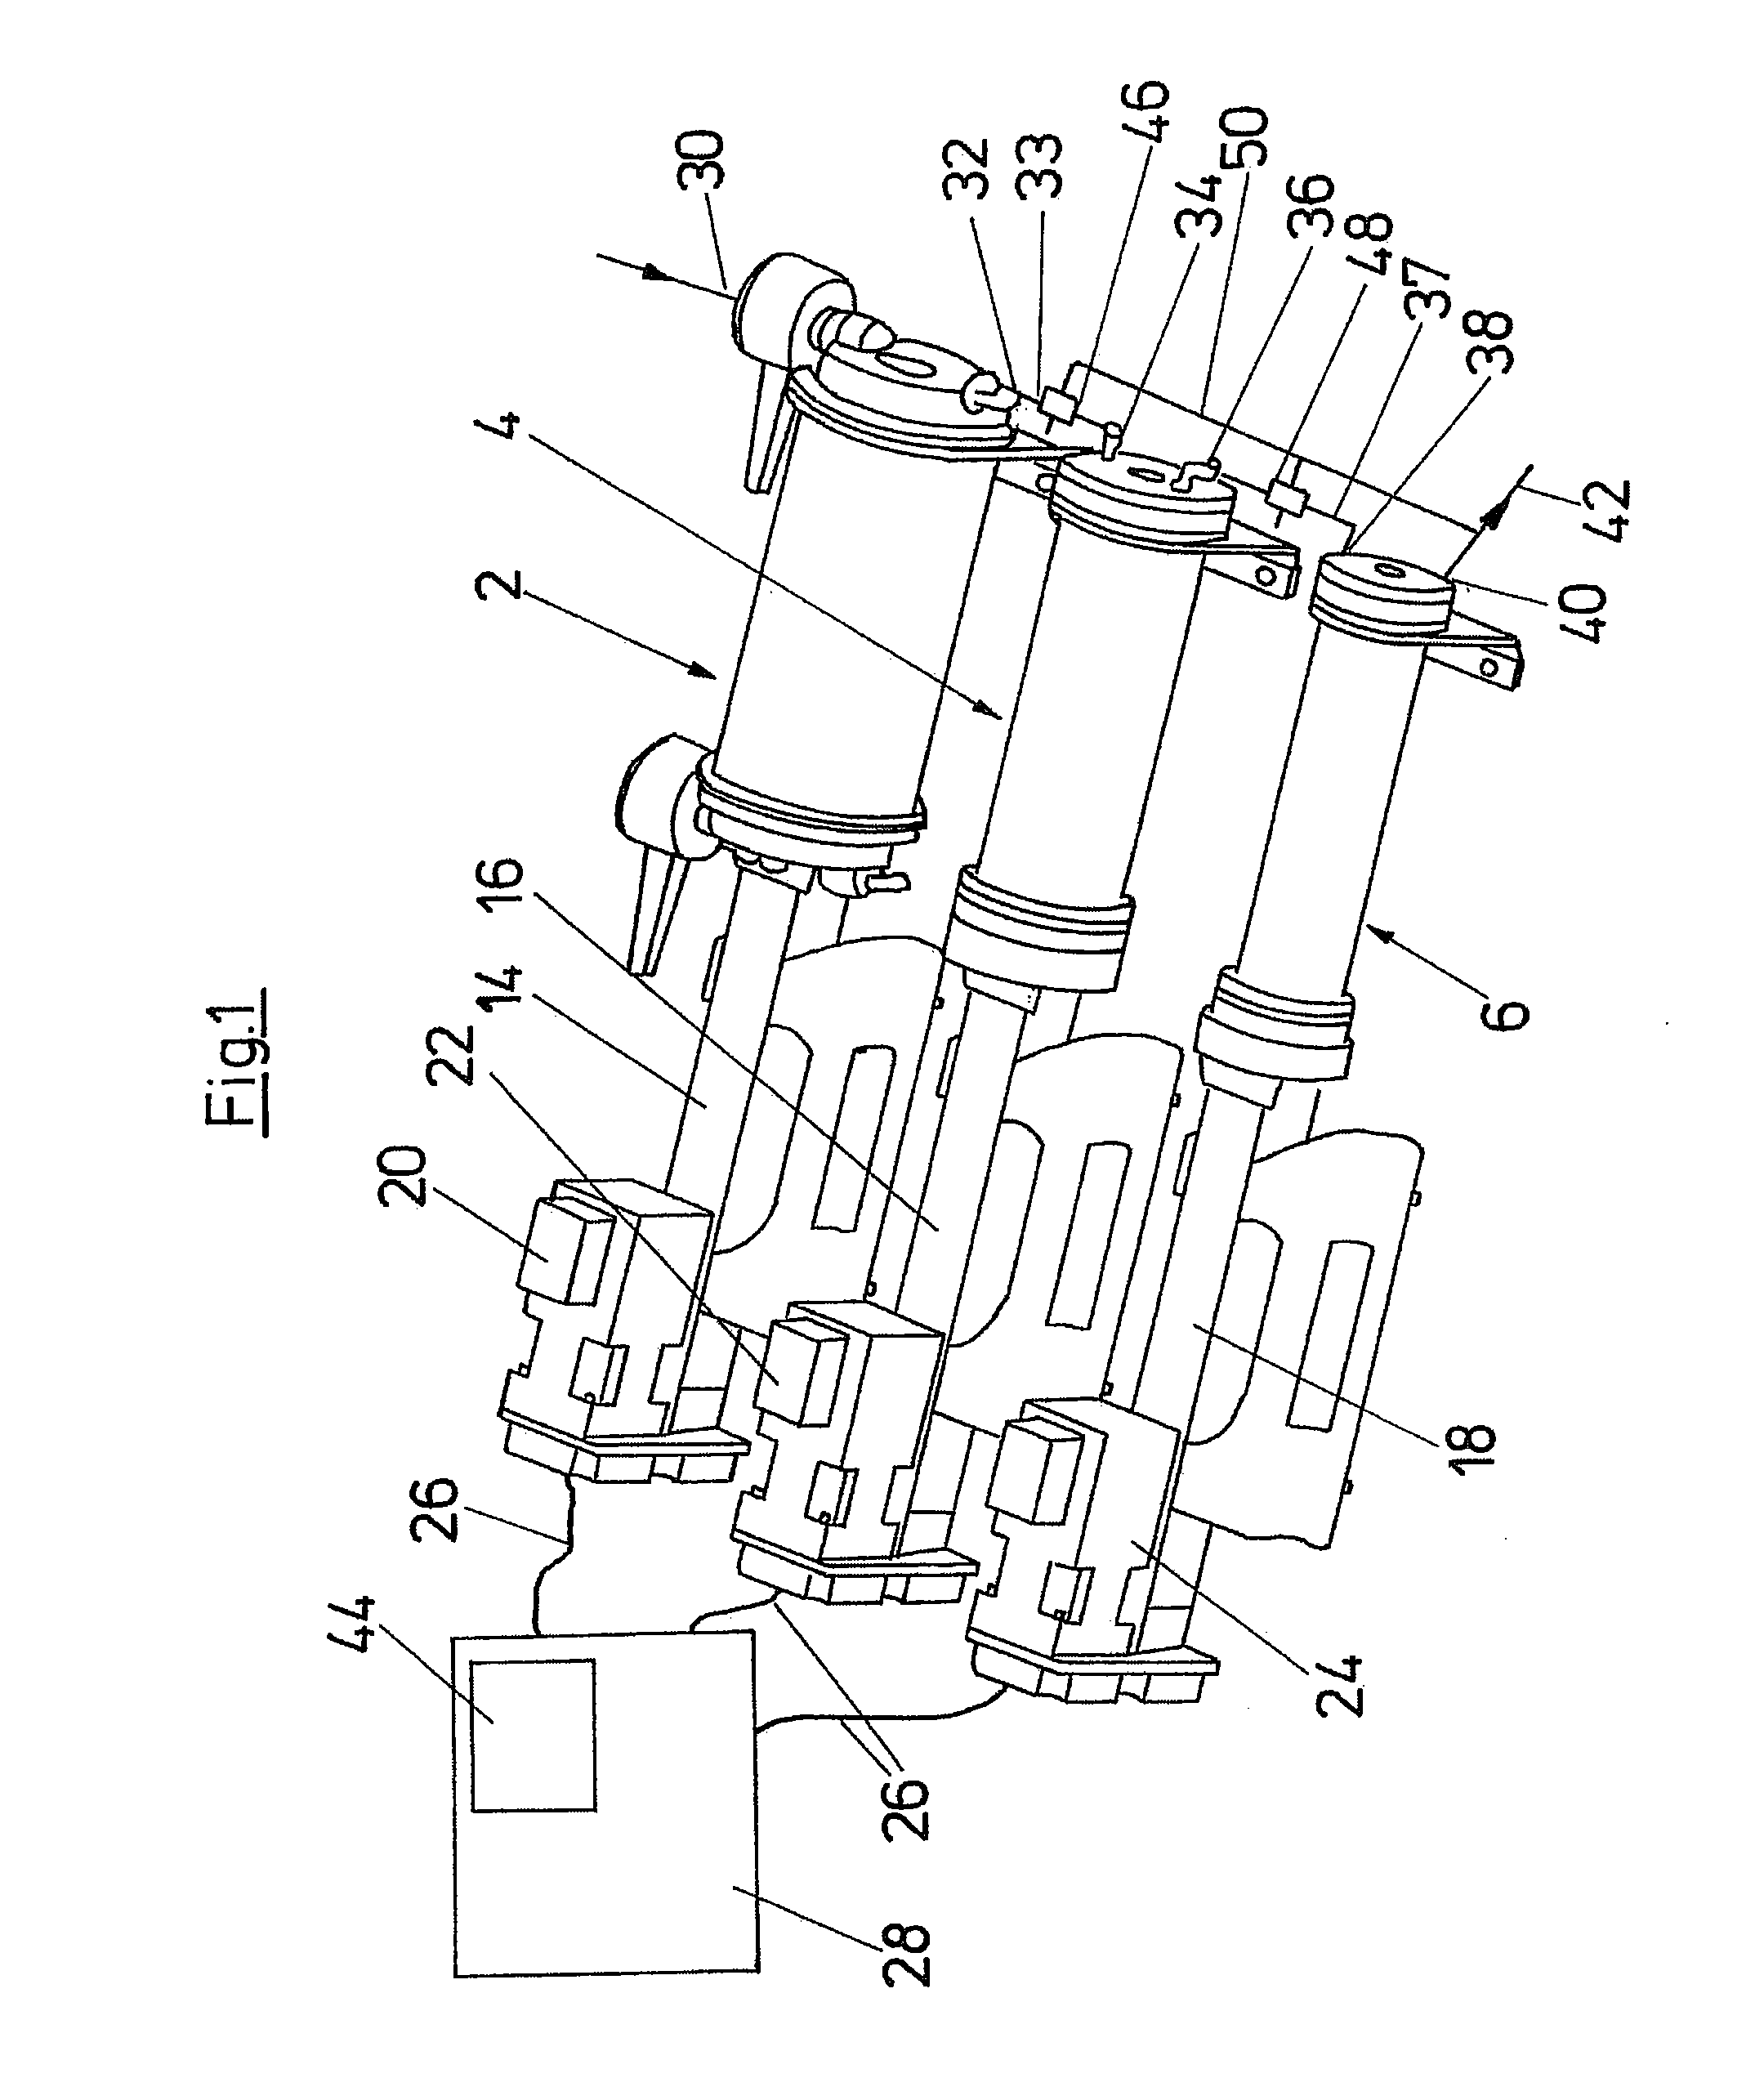 Multi-stage piston compressor